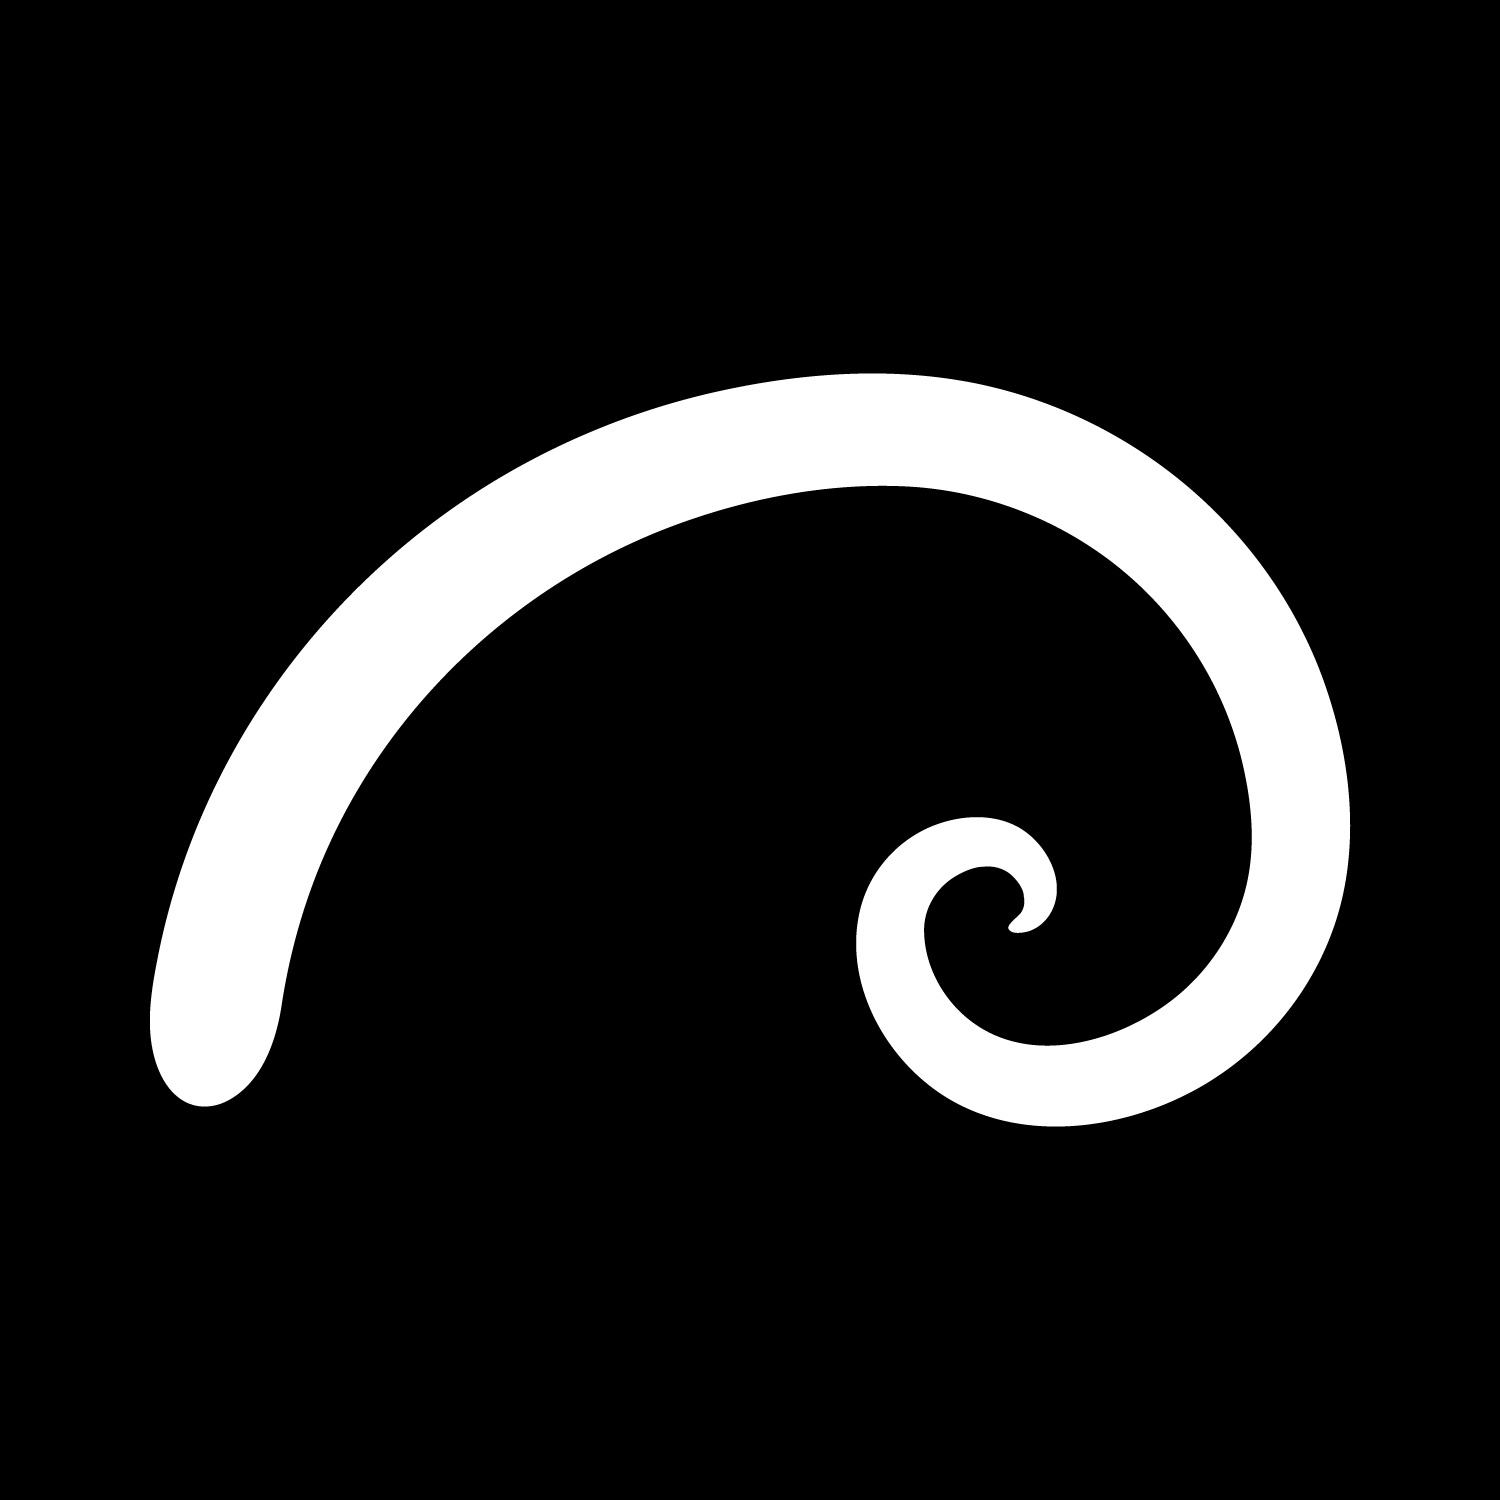 Golden Spiral brand,mark logo copy for blog posts